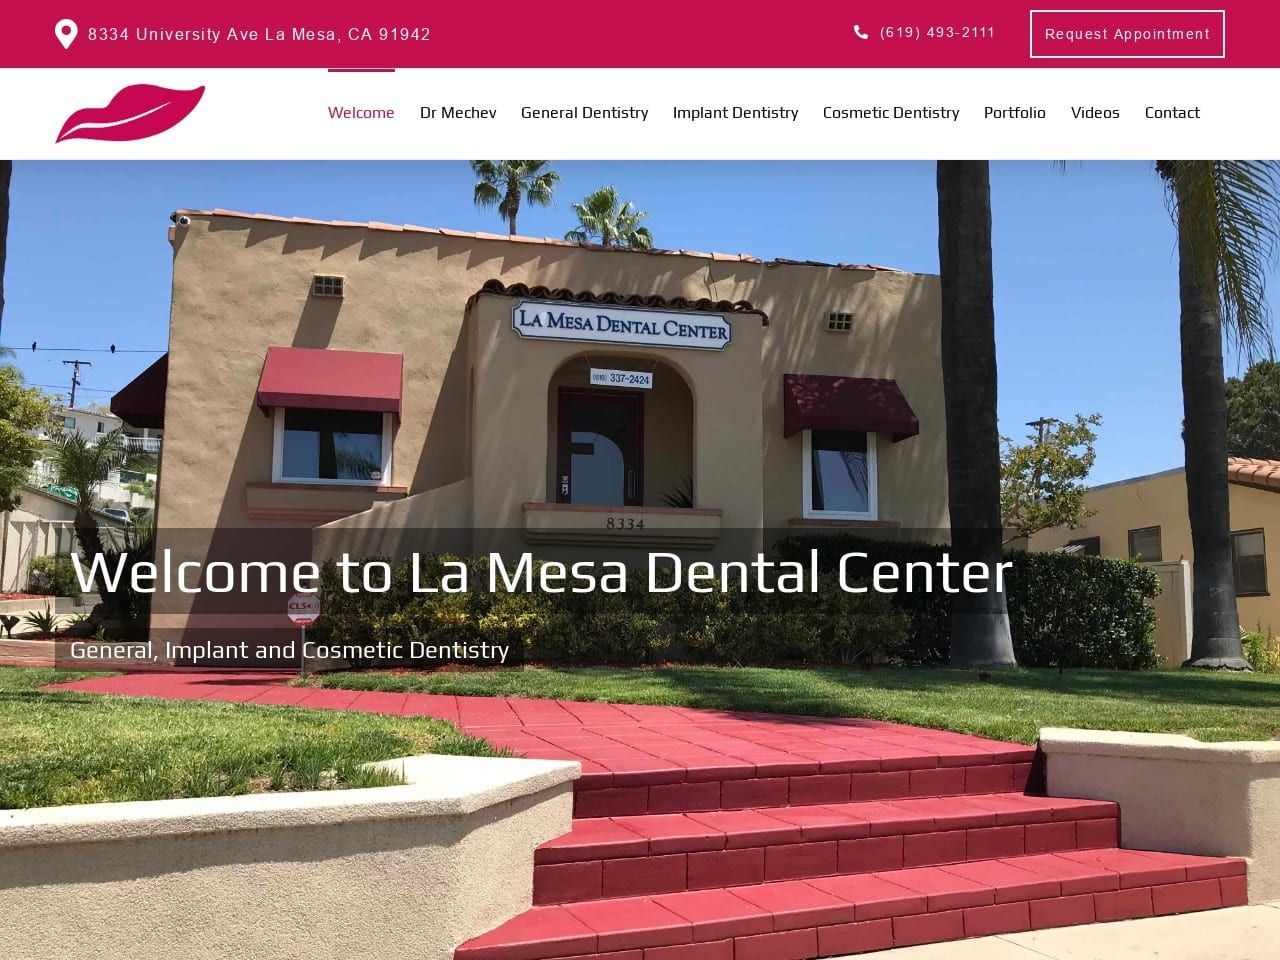 La Mesa Dental Center Website Screenshot from lamesadentistry.net